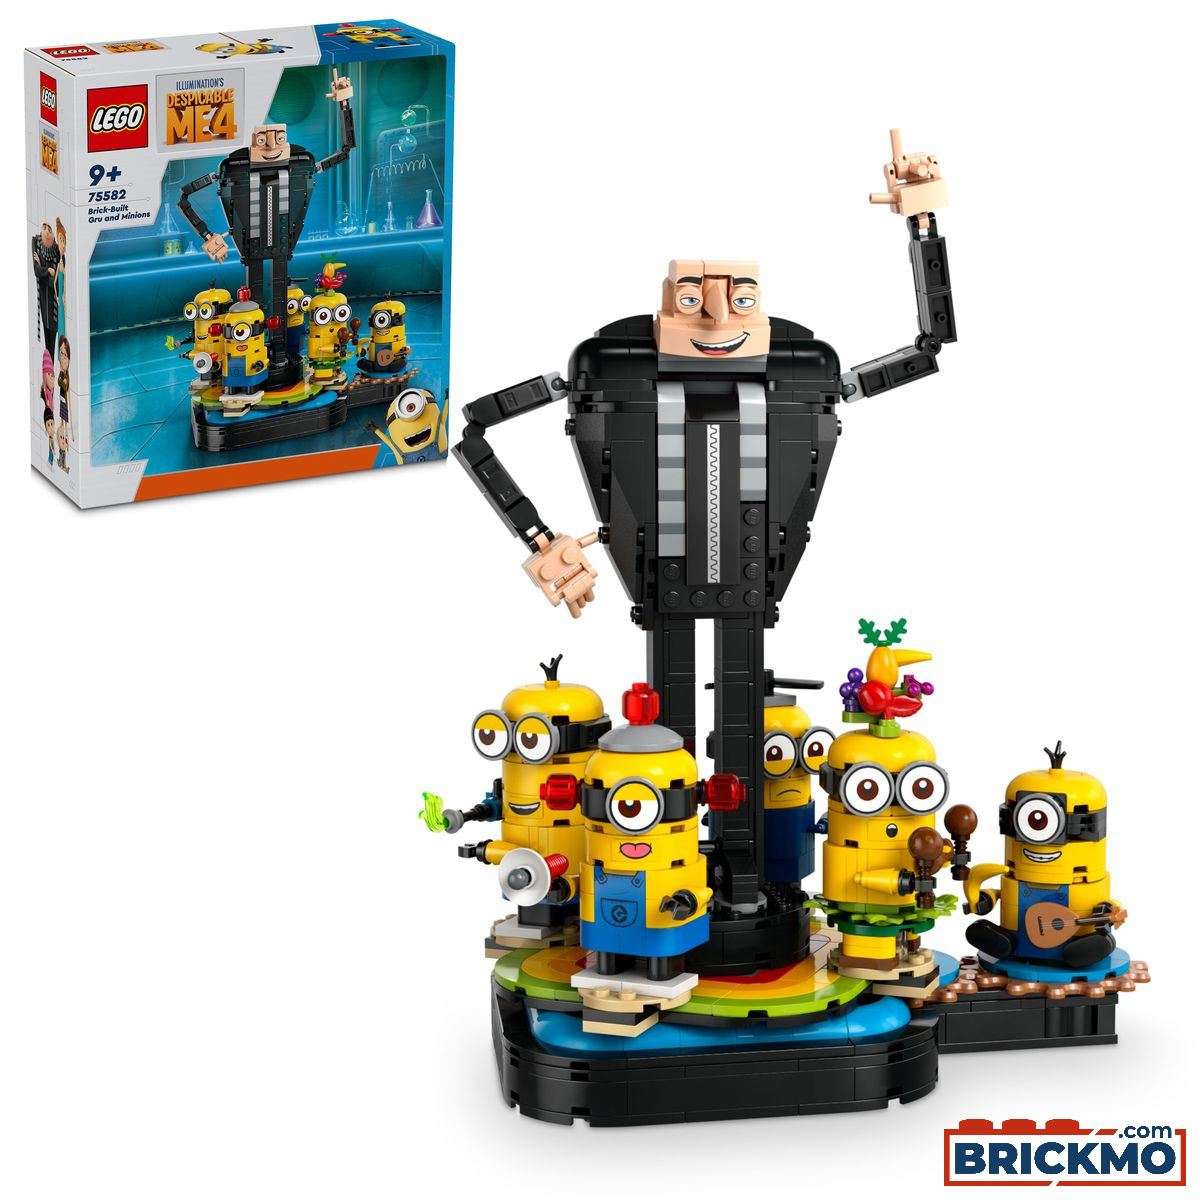 LEGO Minions 75582 Modelo de Gru y los Minions 75582